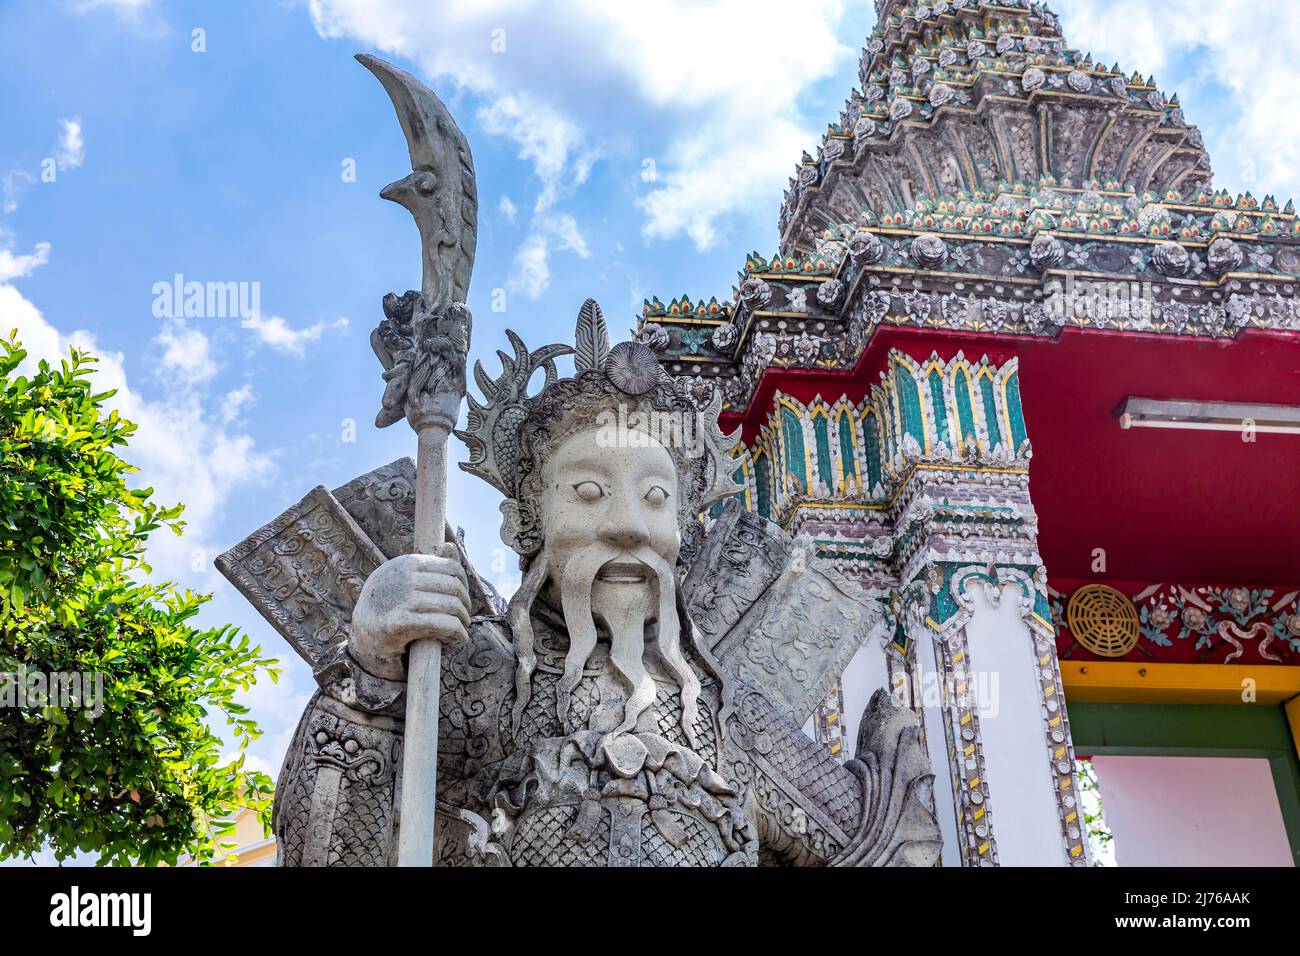 Porta d'ingresso protetta da figura cinese in pietra, custode del tempio, complesso del tempio Wat Pho, Tempio del Buddha sdraiato, Bangkok, Thailandia, Asia Foto Stock